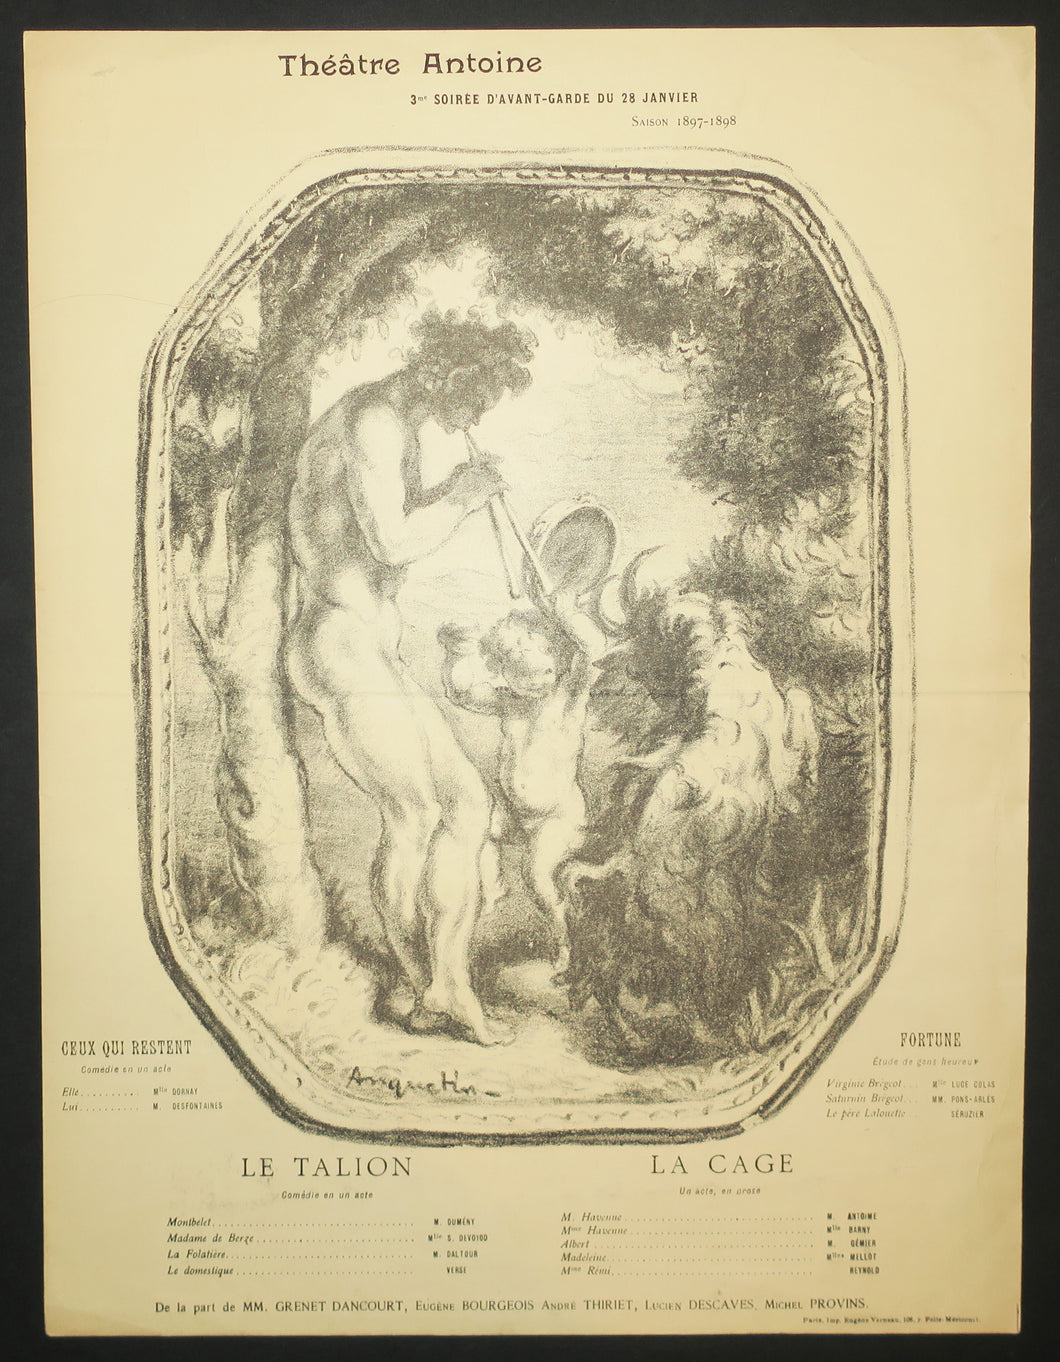 Programme pour le Théâtre Antoine: Le Talion; La Cage; Ceux qui restent; Fortune. 3ème Soirée d'avant-garde du 28 janvier 1898.